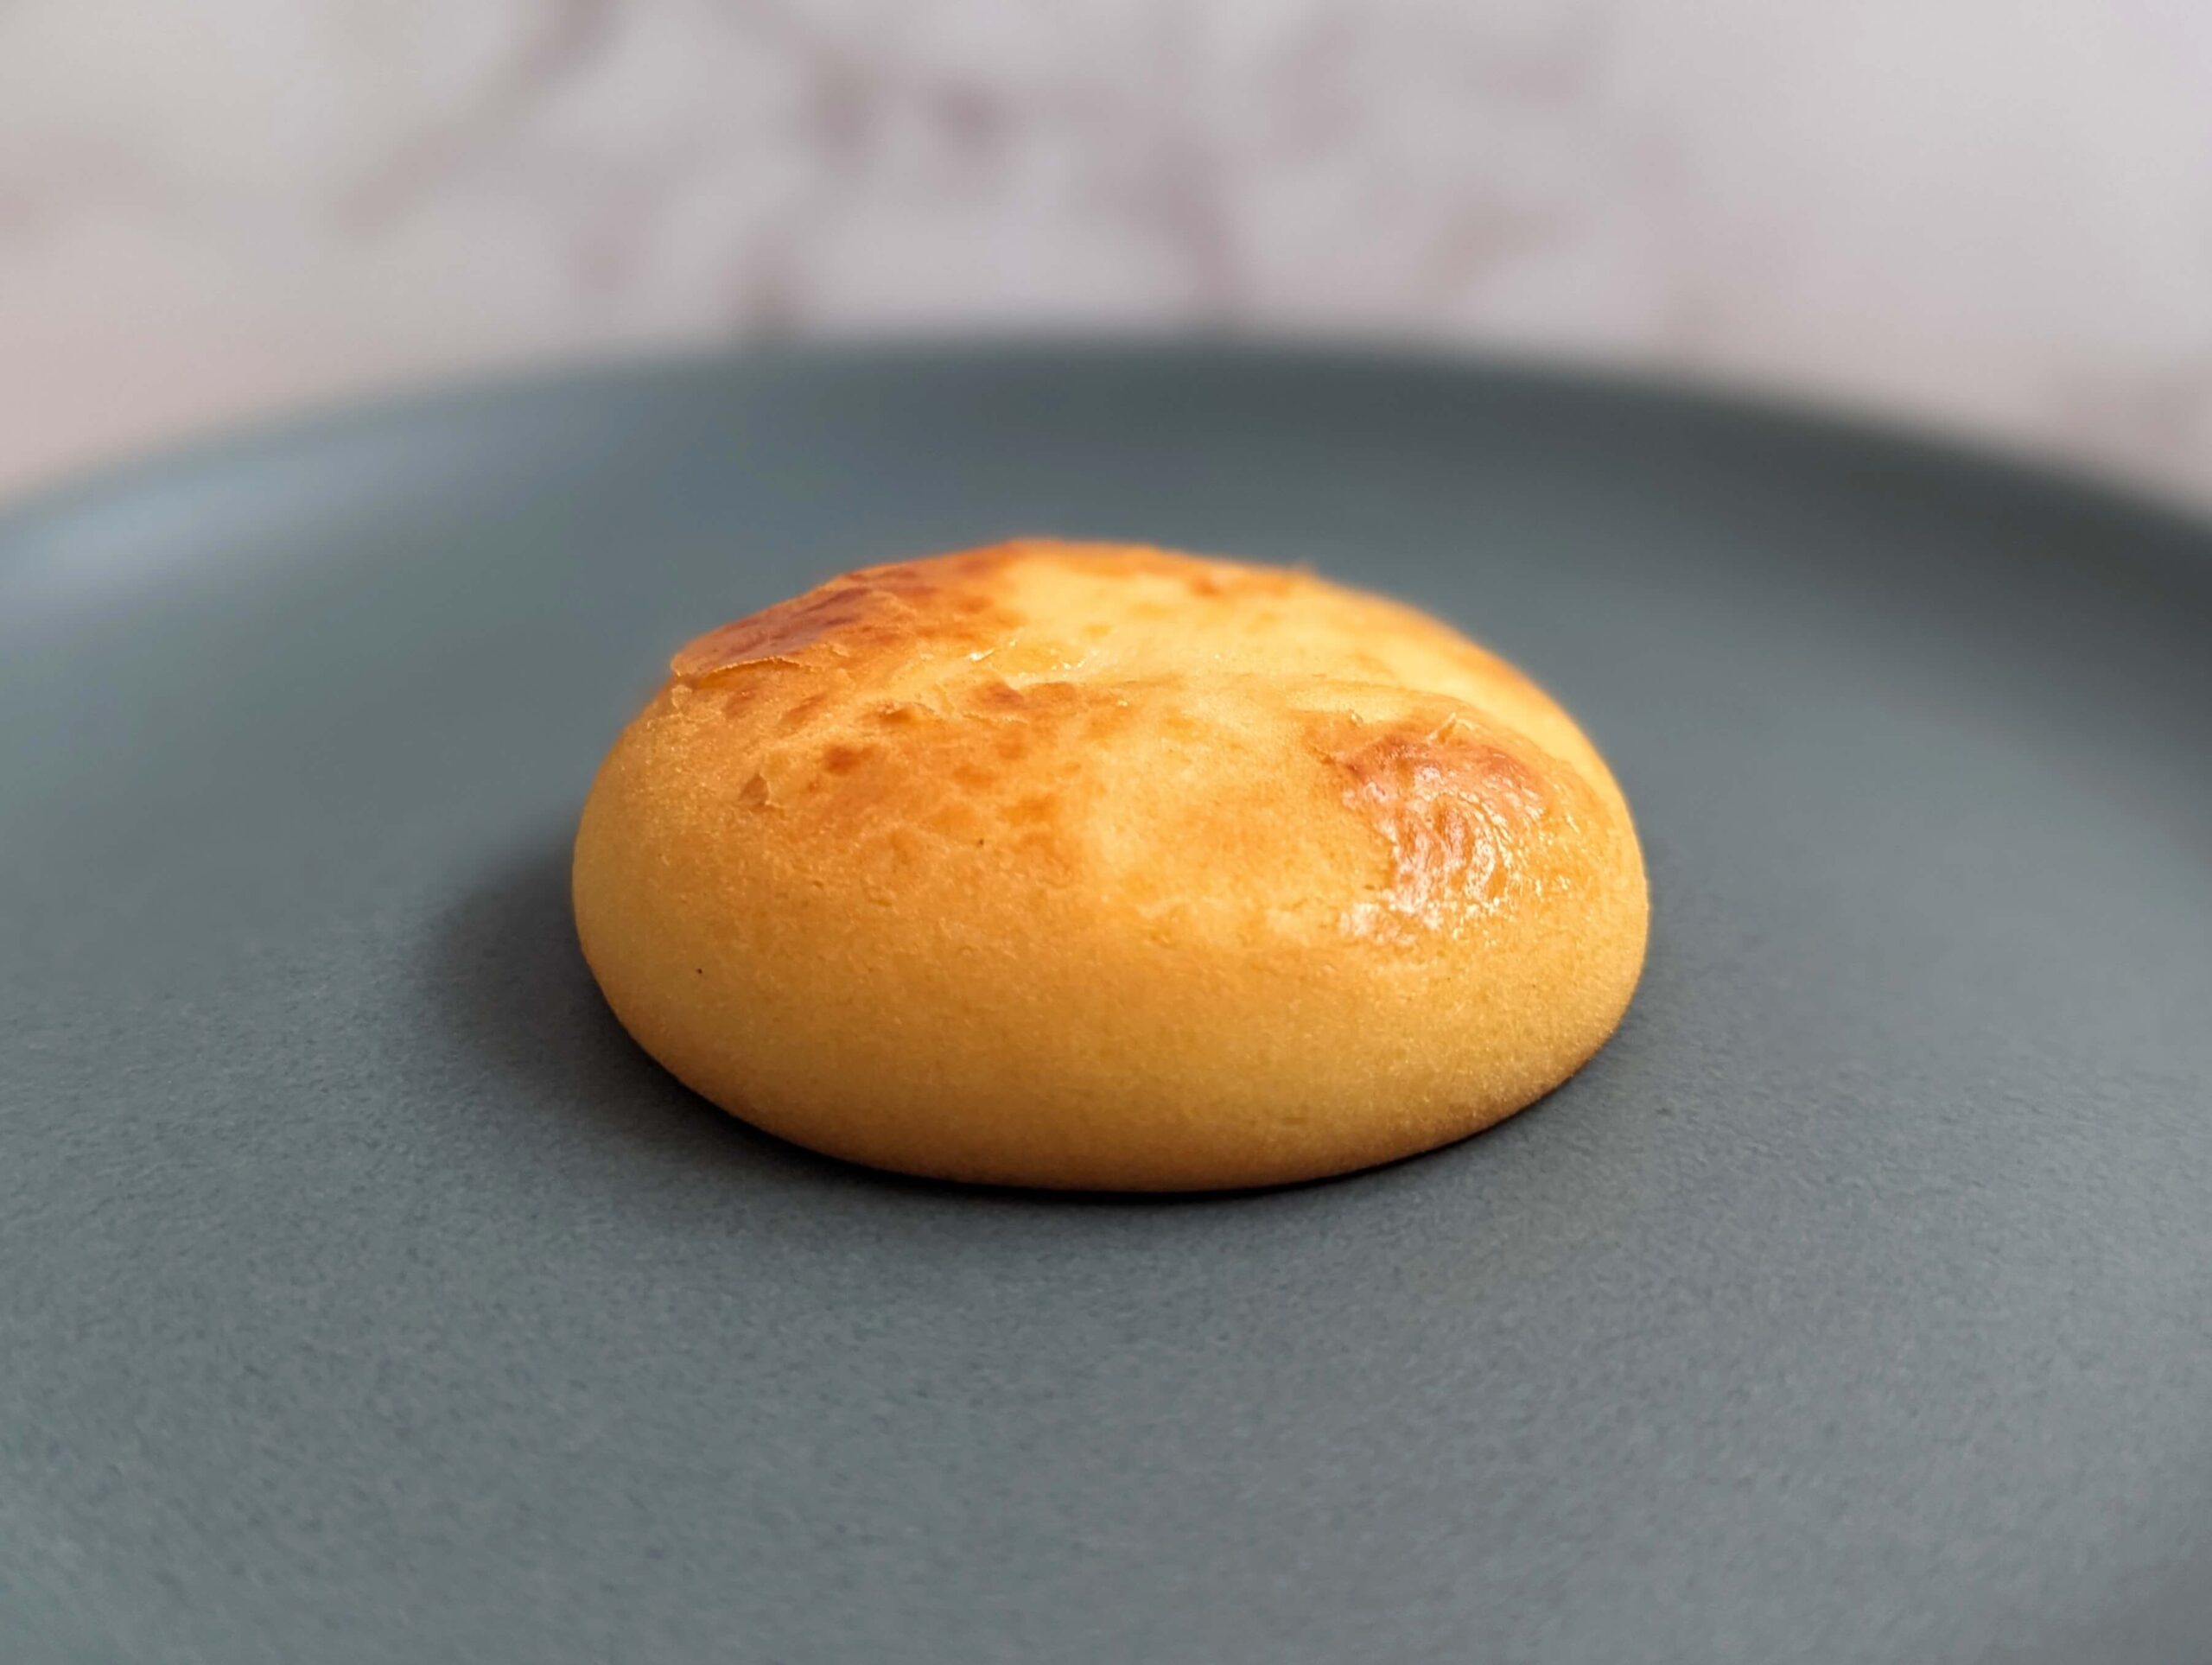 シャトレーゼの「濃厚チーズクリーム 窯焼きチーズ饅頭」 (7)